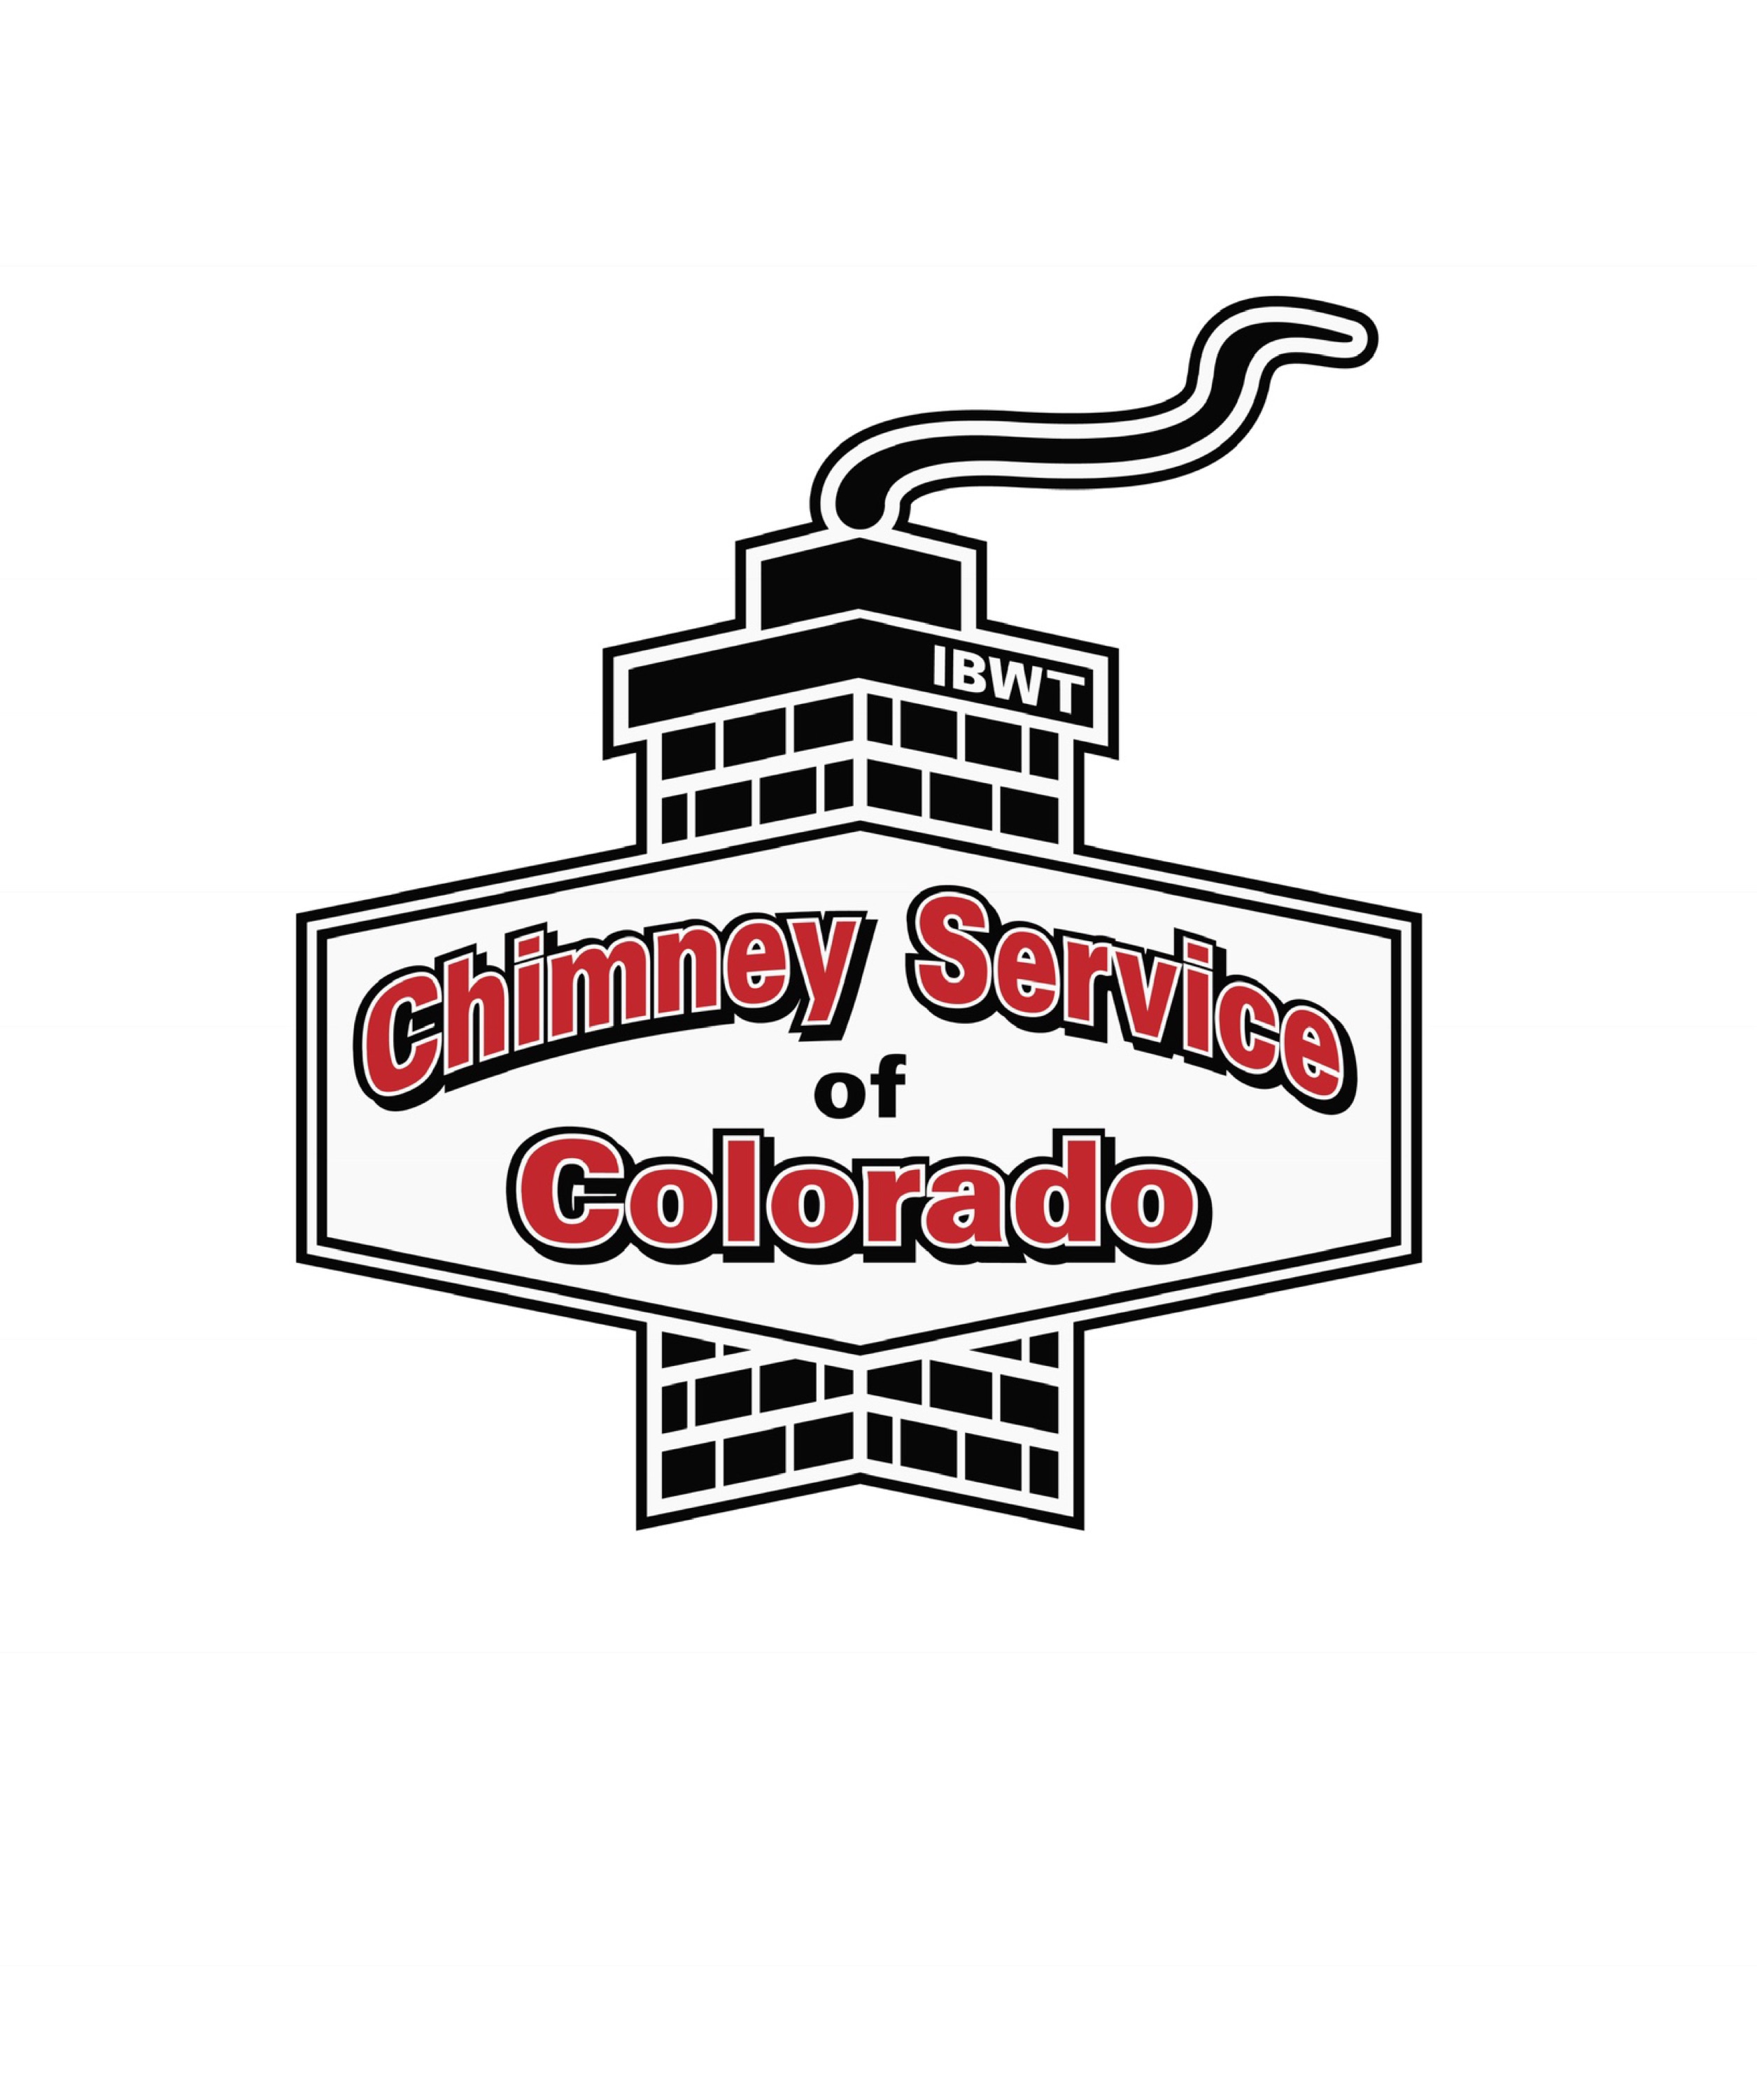 Chimney Service of Colorado Corp. Logo